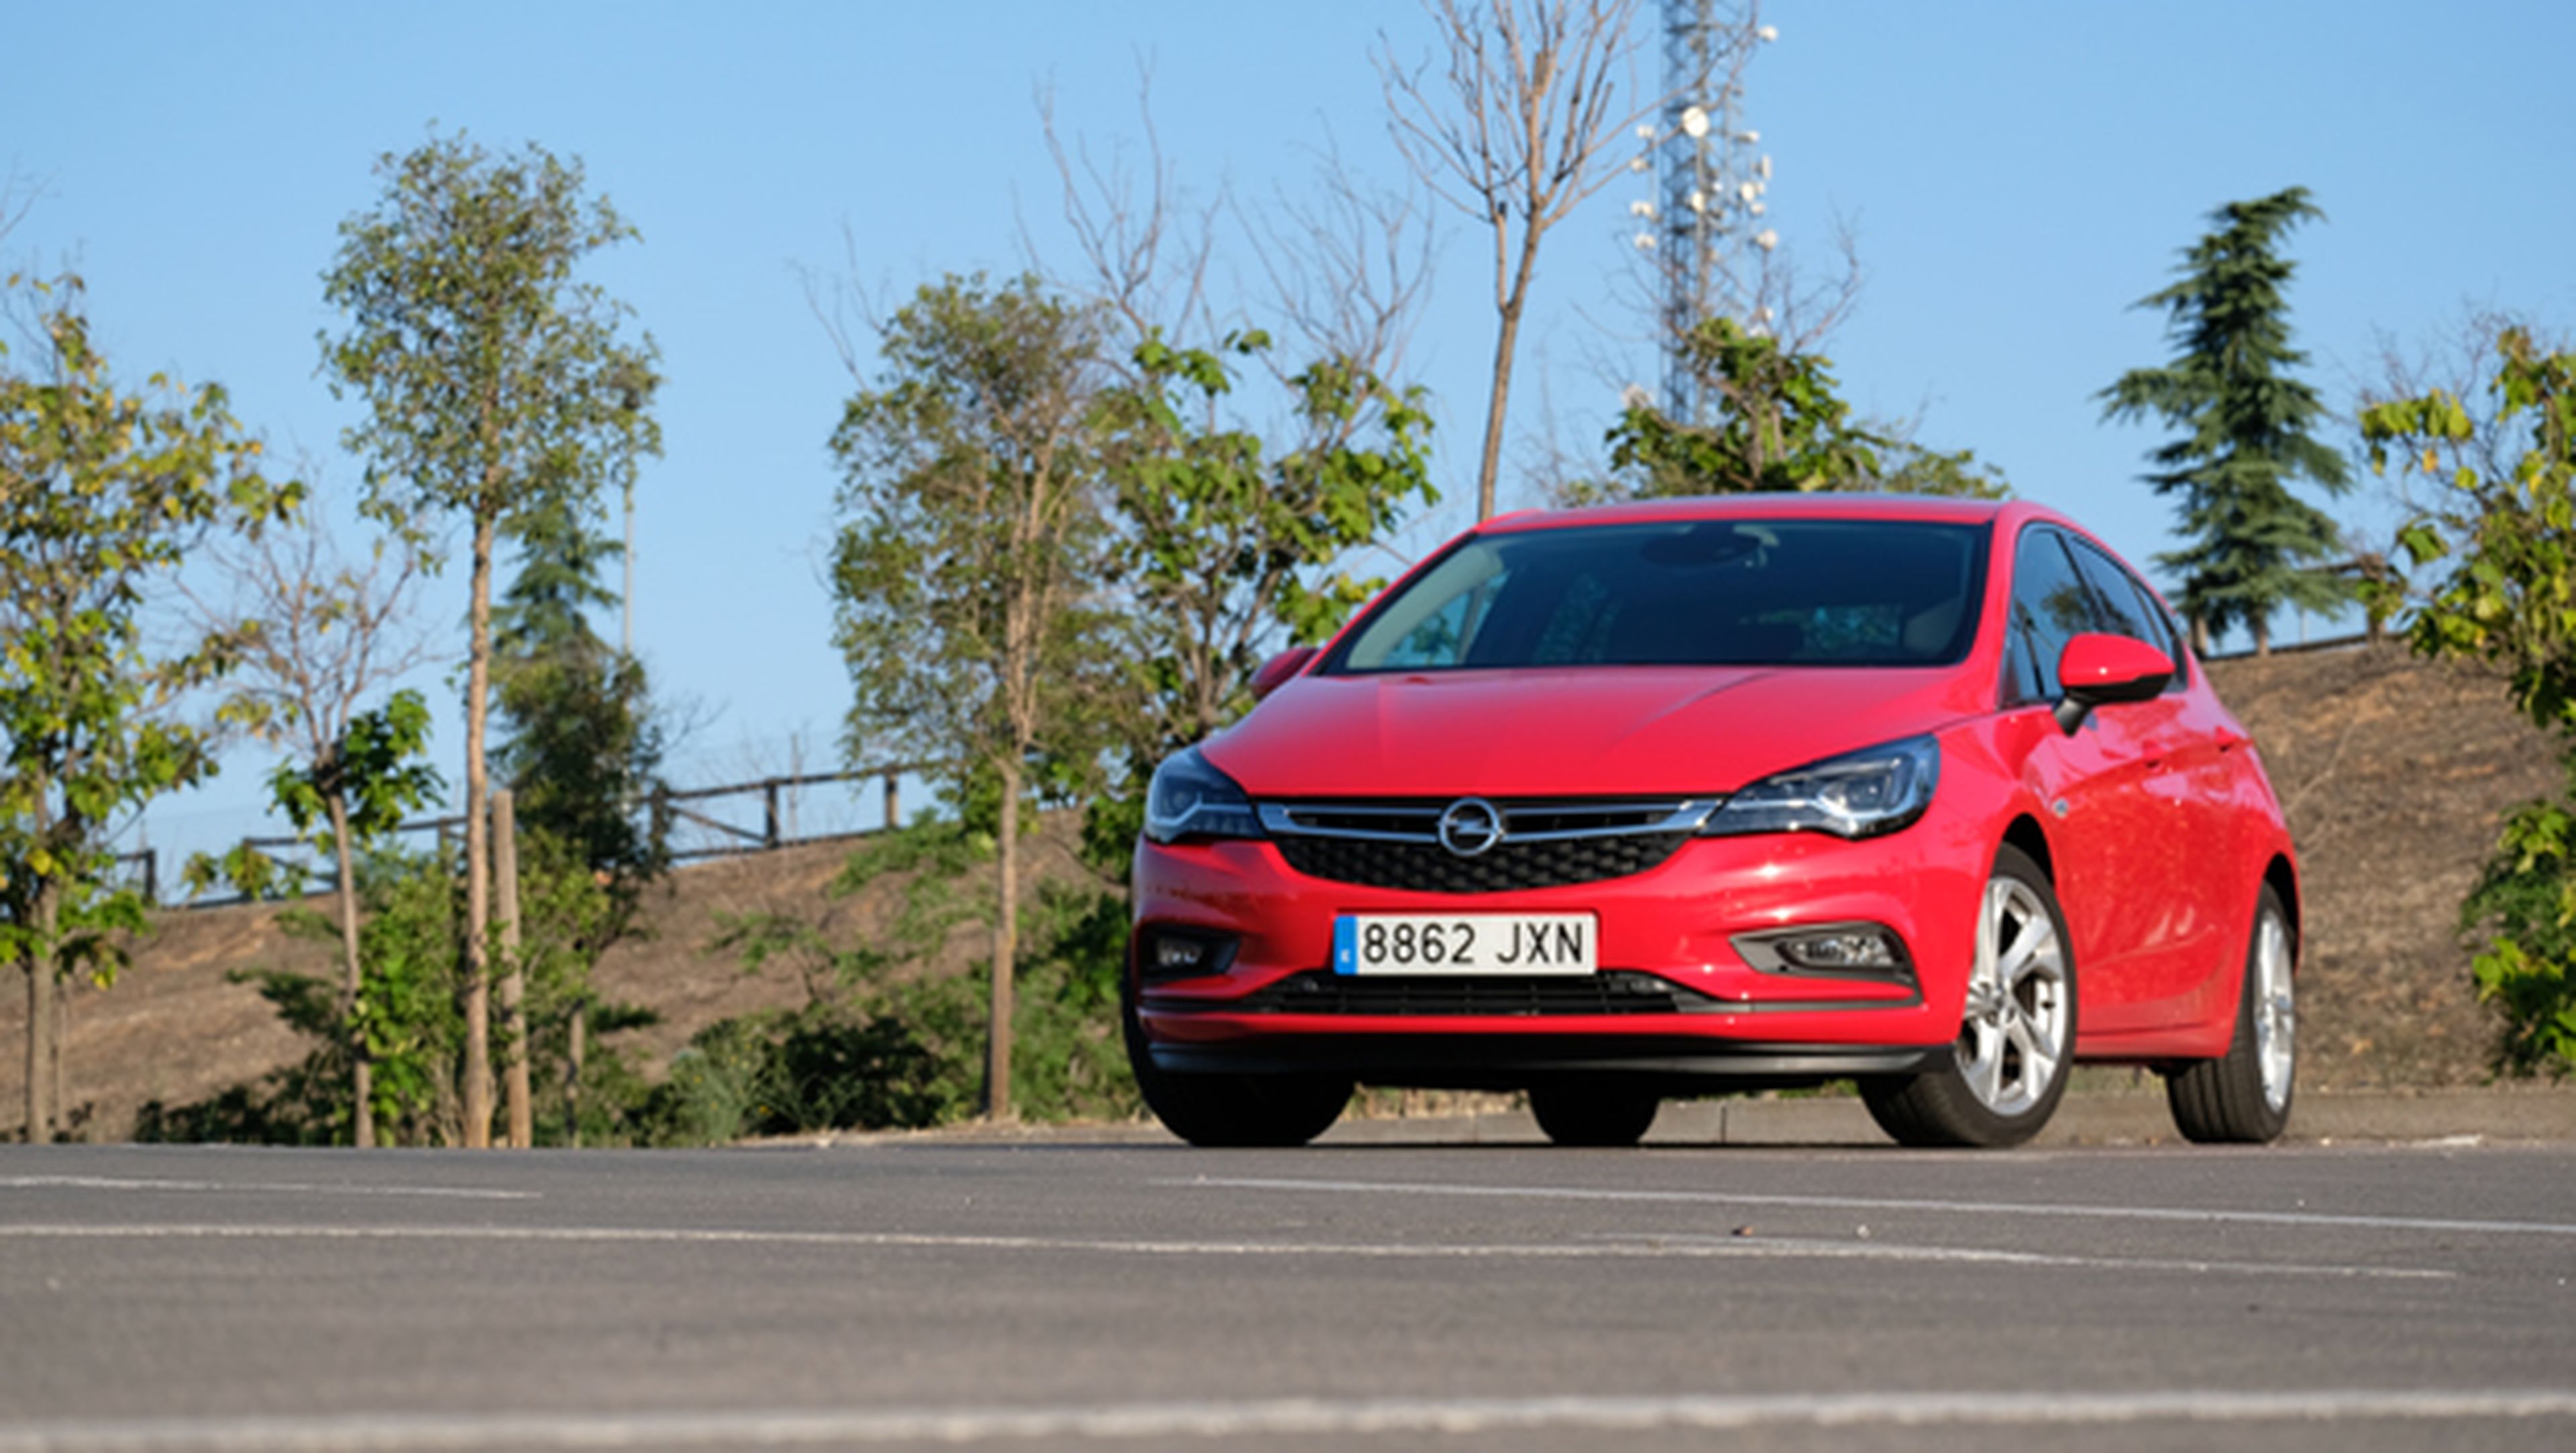 Opel Astra 2017, probamos la tecnología de este coche